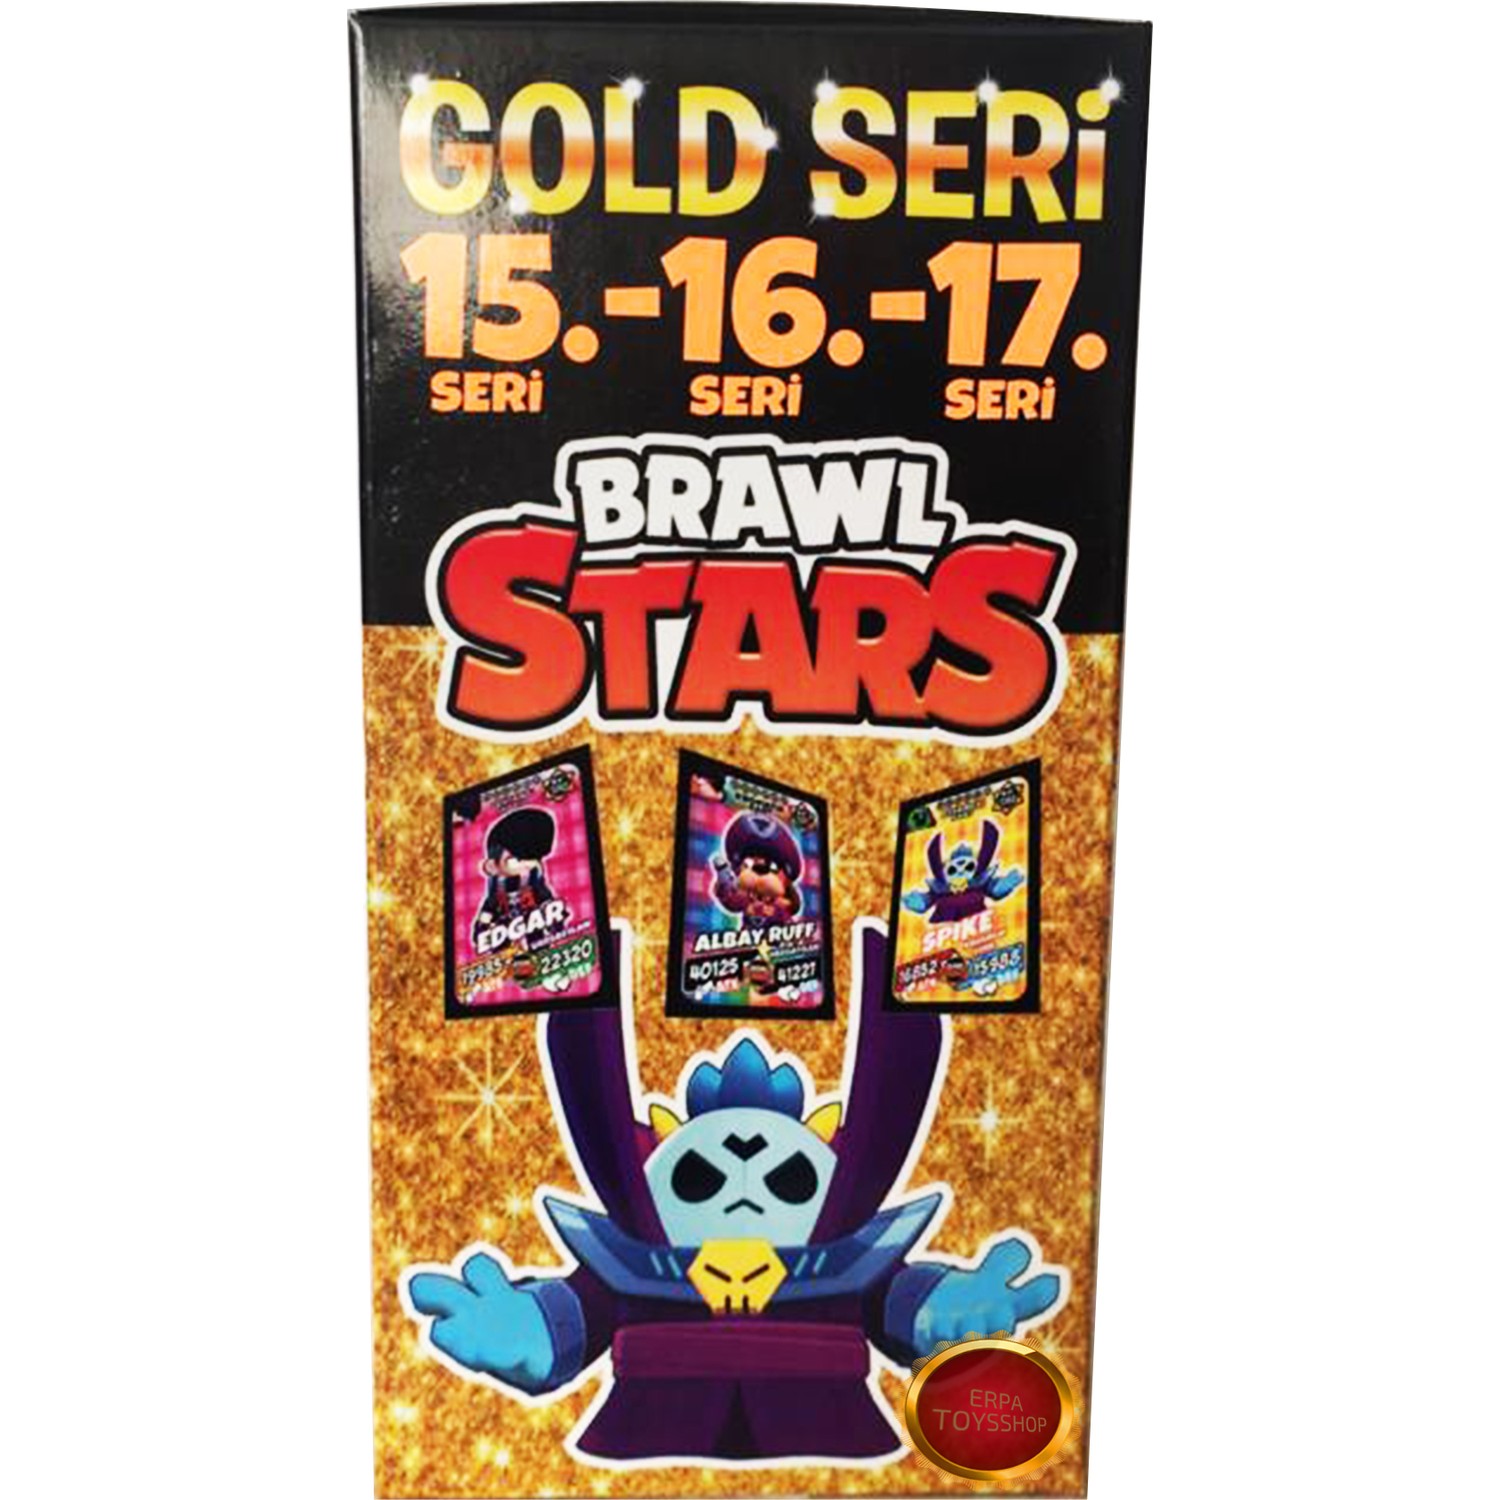 Brawl Stars 15 16 Ve 17 Seri Gold Seri Yeni Ve Ozel Fiyati - brawl stars kartları 15. seri